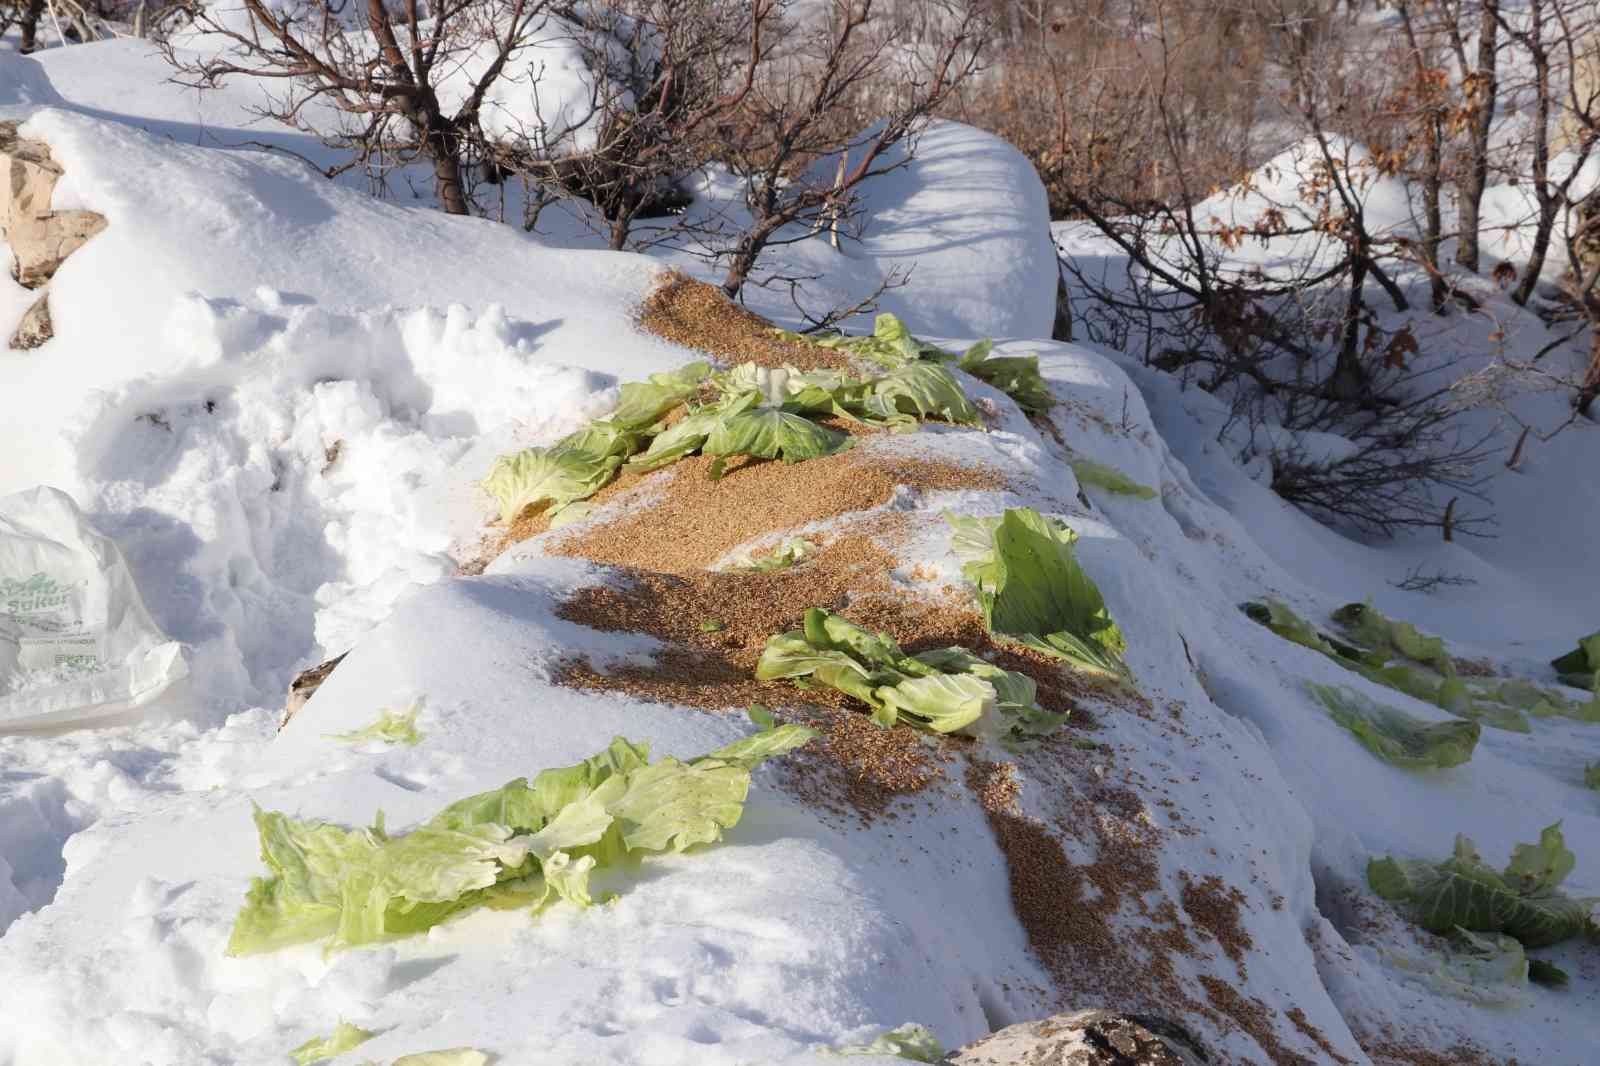 Siirt’te karda yiyecek bulamayan yaban hayvanları için doğaya 350 kilo yem bırakıldı #siirt